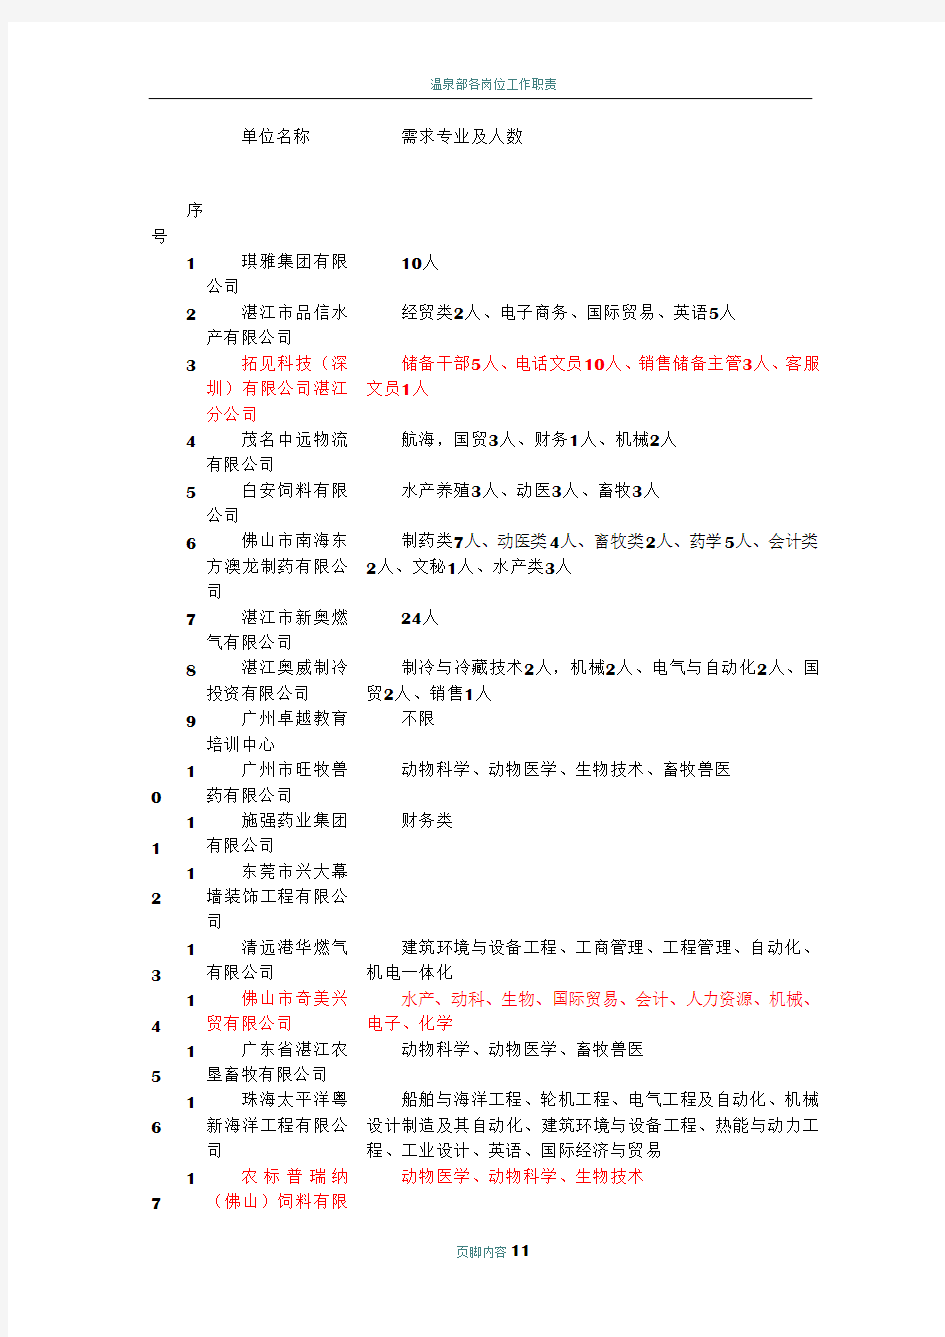 (最新)2012粤西招聘会企业资料和专业岗位